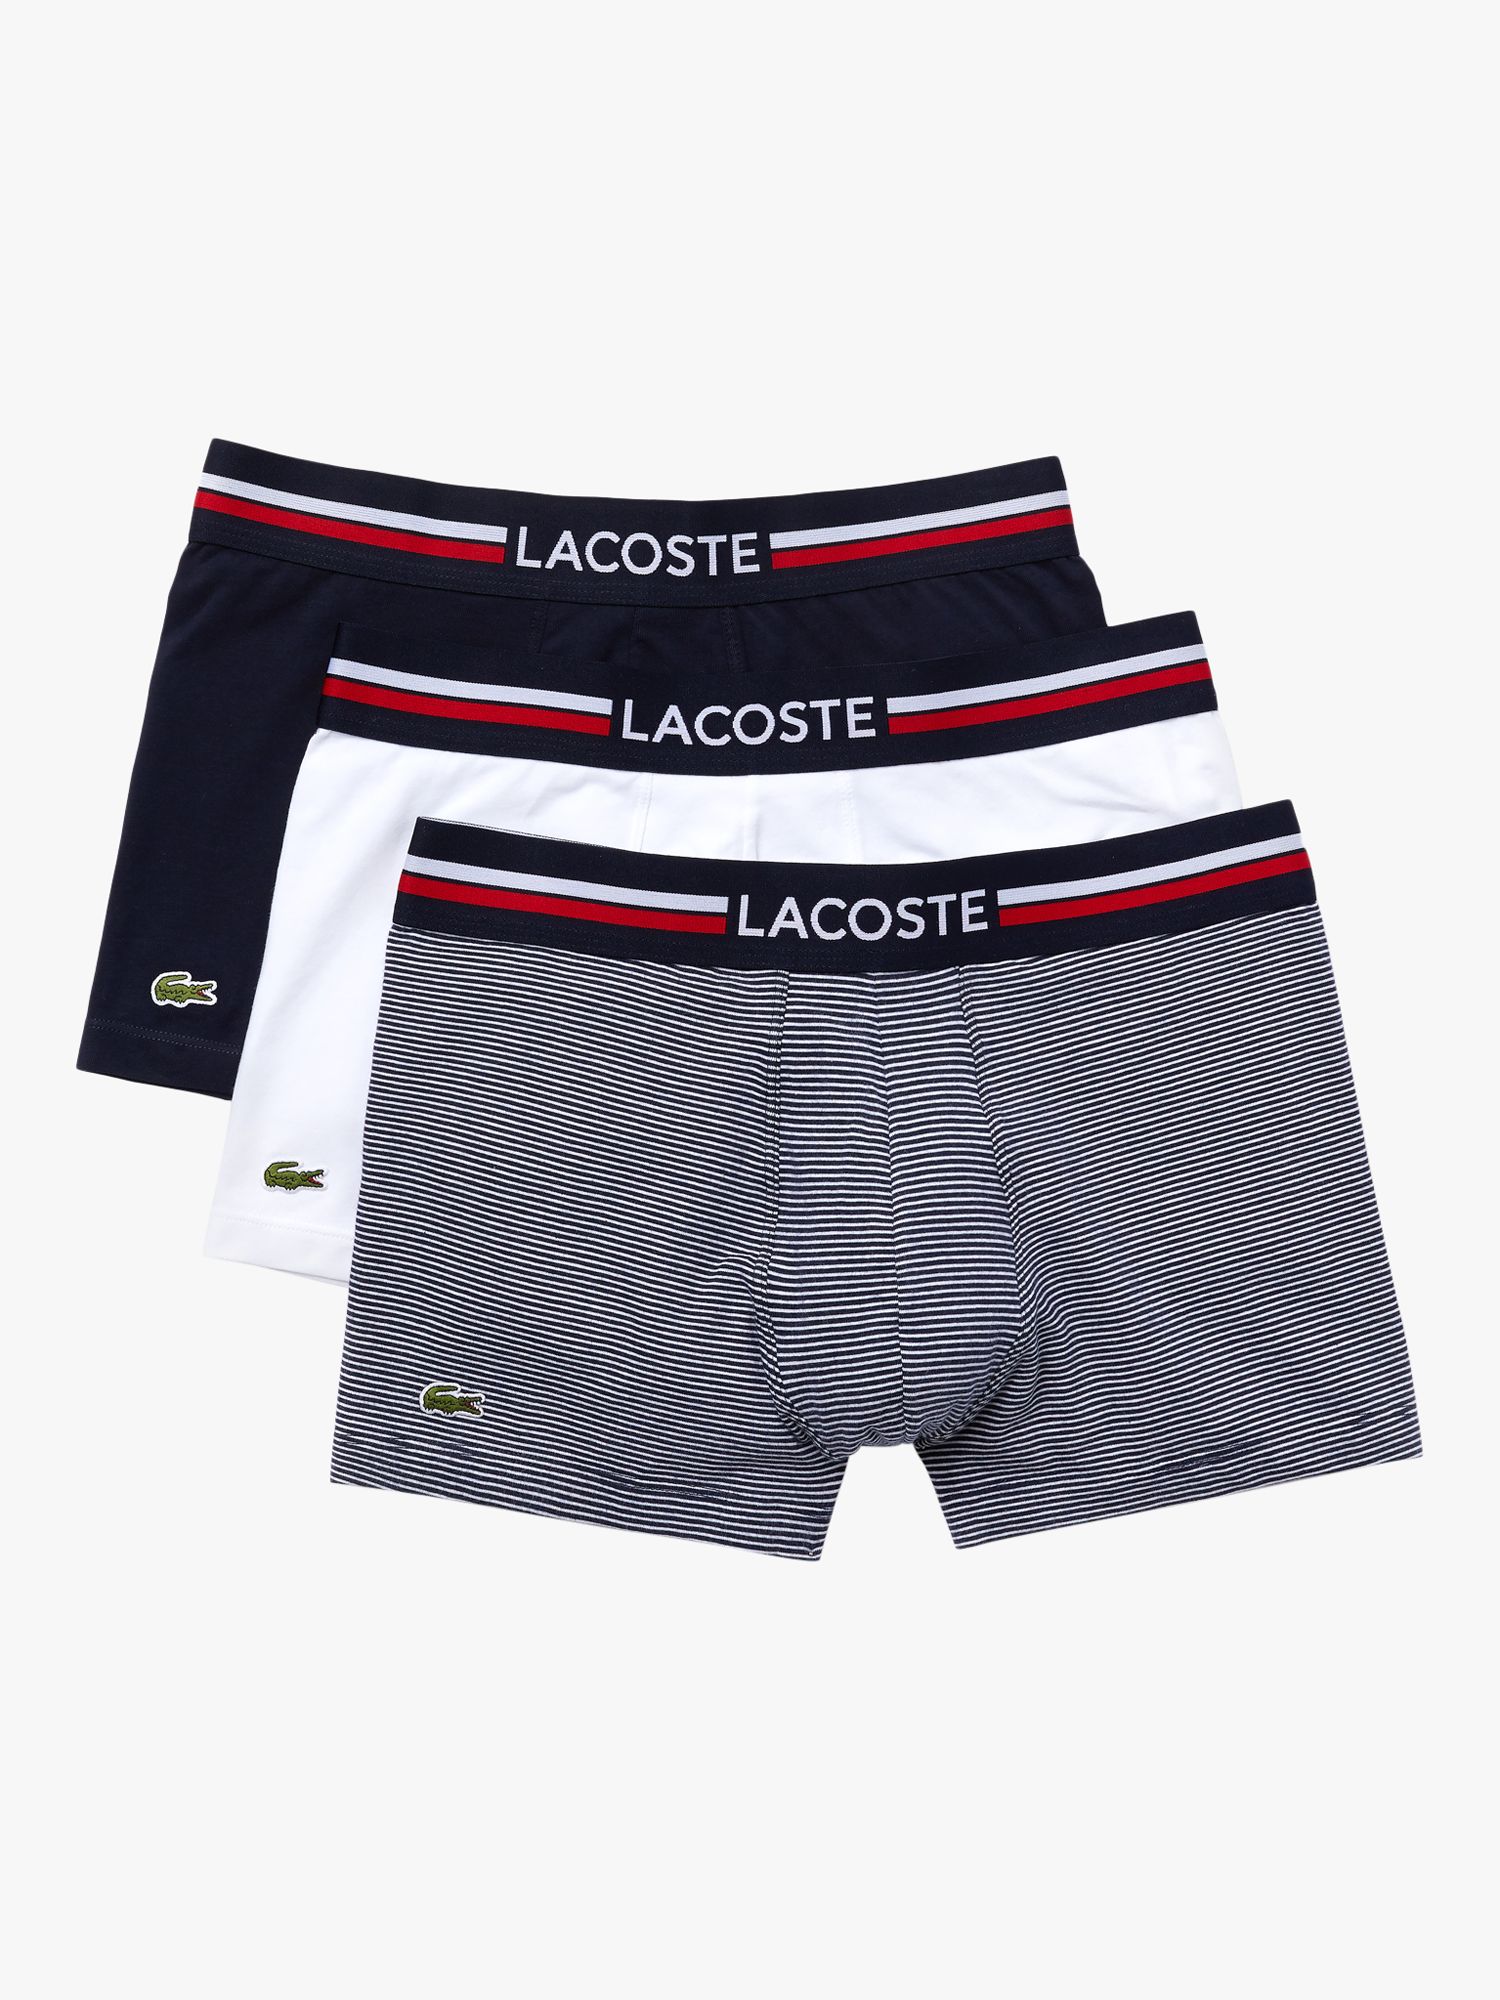 Lacoste Cotton Sport Low-cut Socks Three-pack in Silver/Navy/White Mens Underwear Lacoste Underwear Blue for Men 